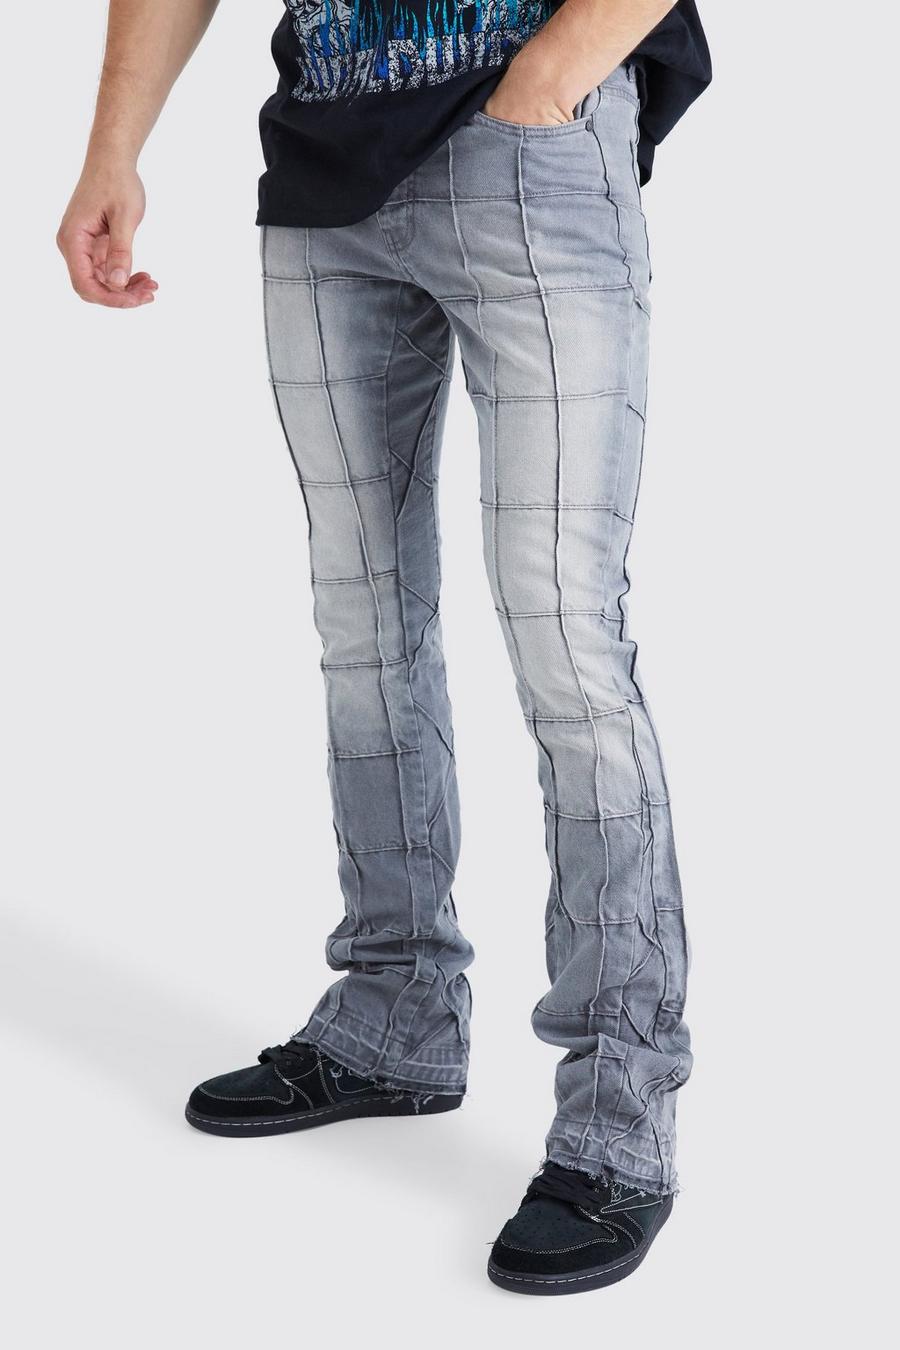 Jeans Tall Slim Fit in denim rigido con pannelli a zampa e inserti, Mid grey